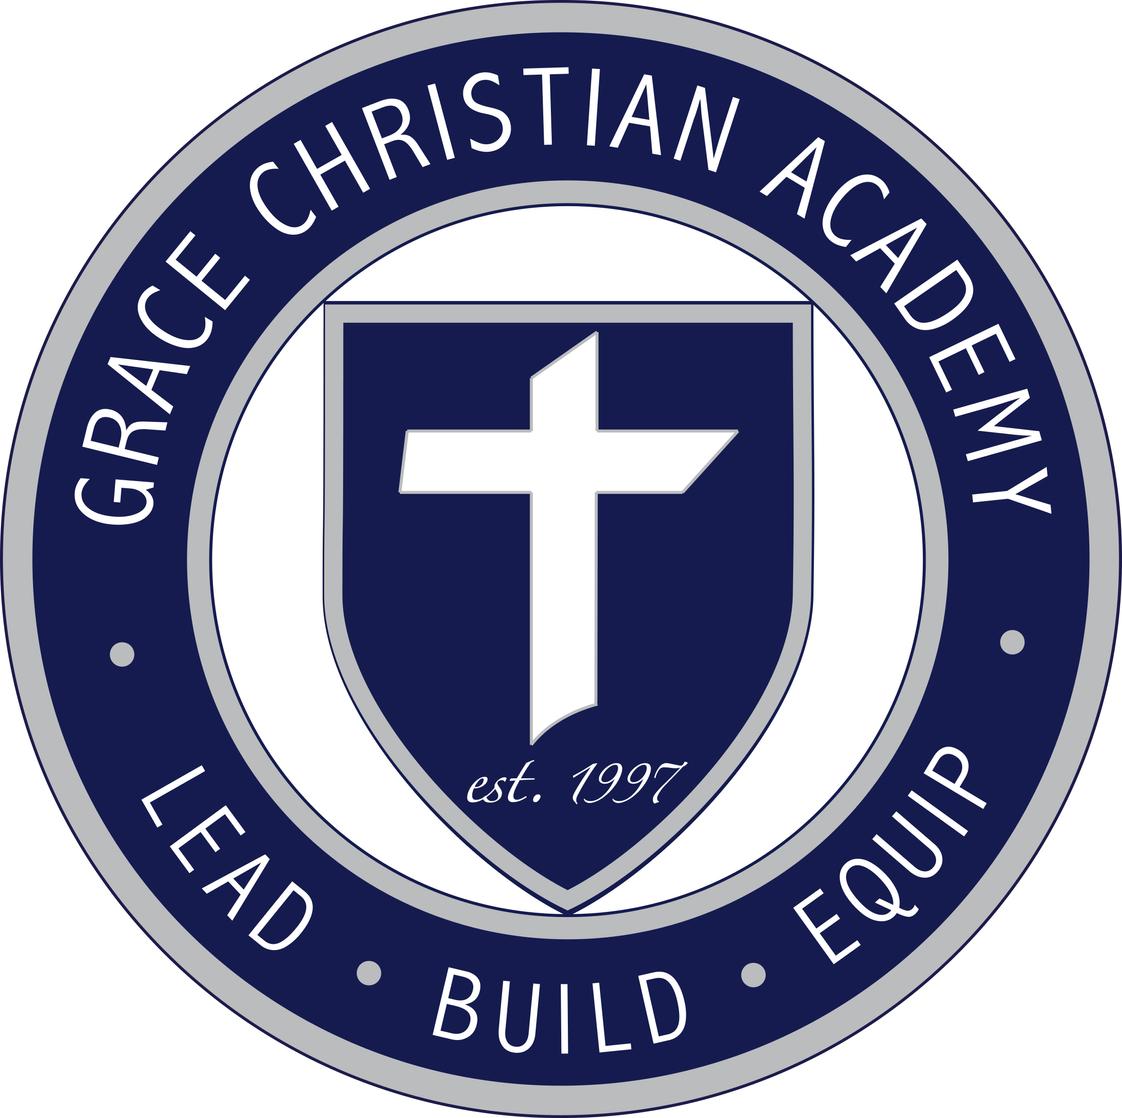 Grace Christian Academy Photo